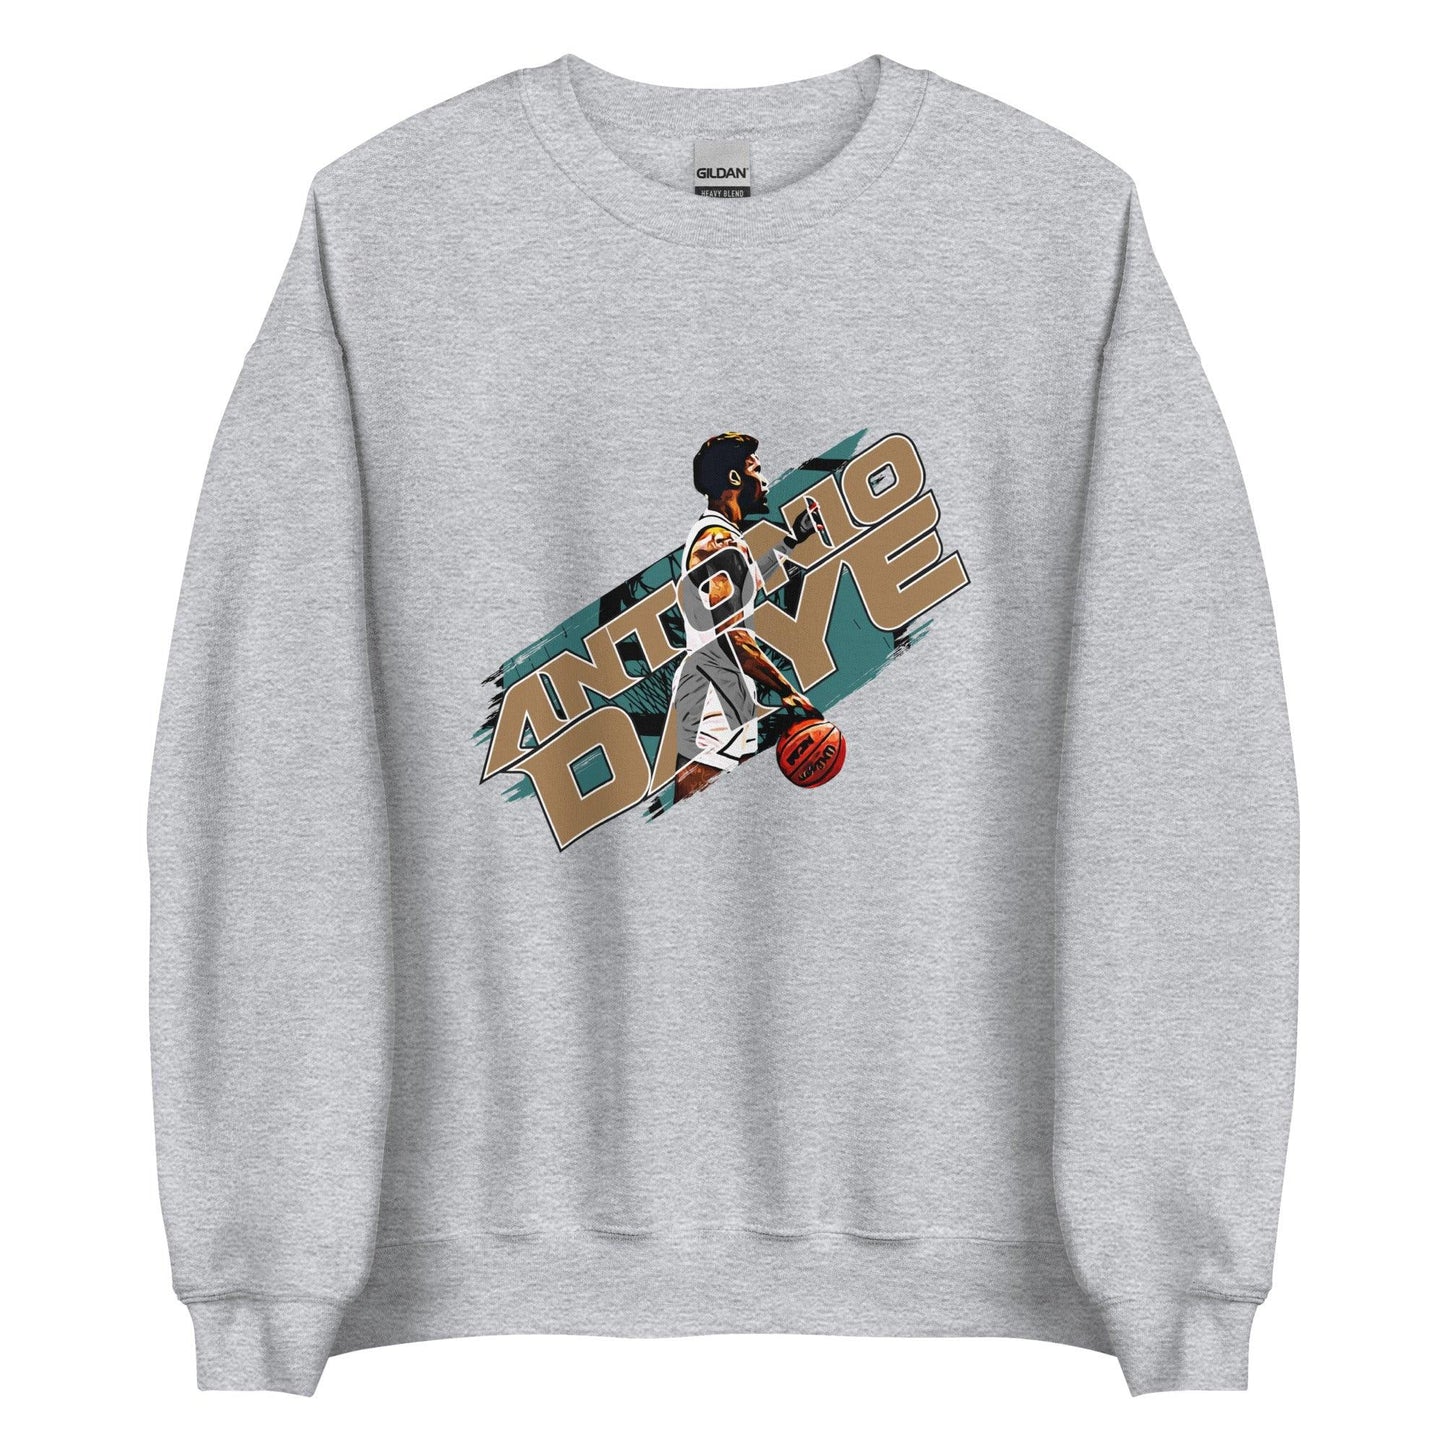 Antonio Daye “Essential” Sweatshirt - Fan Arch